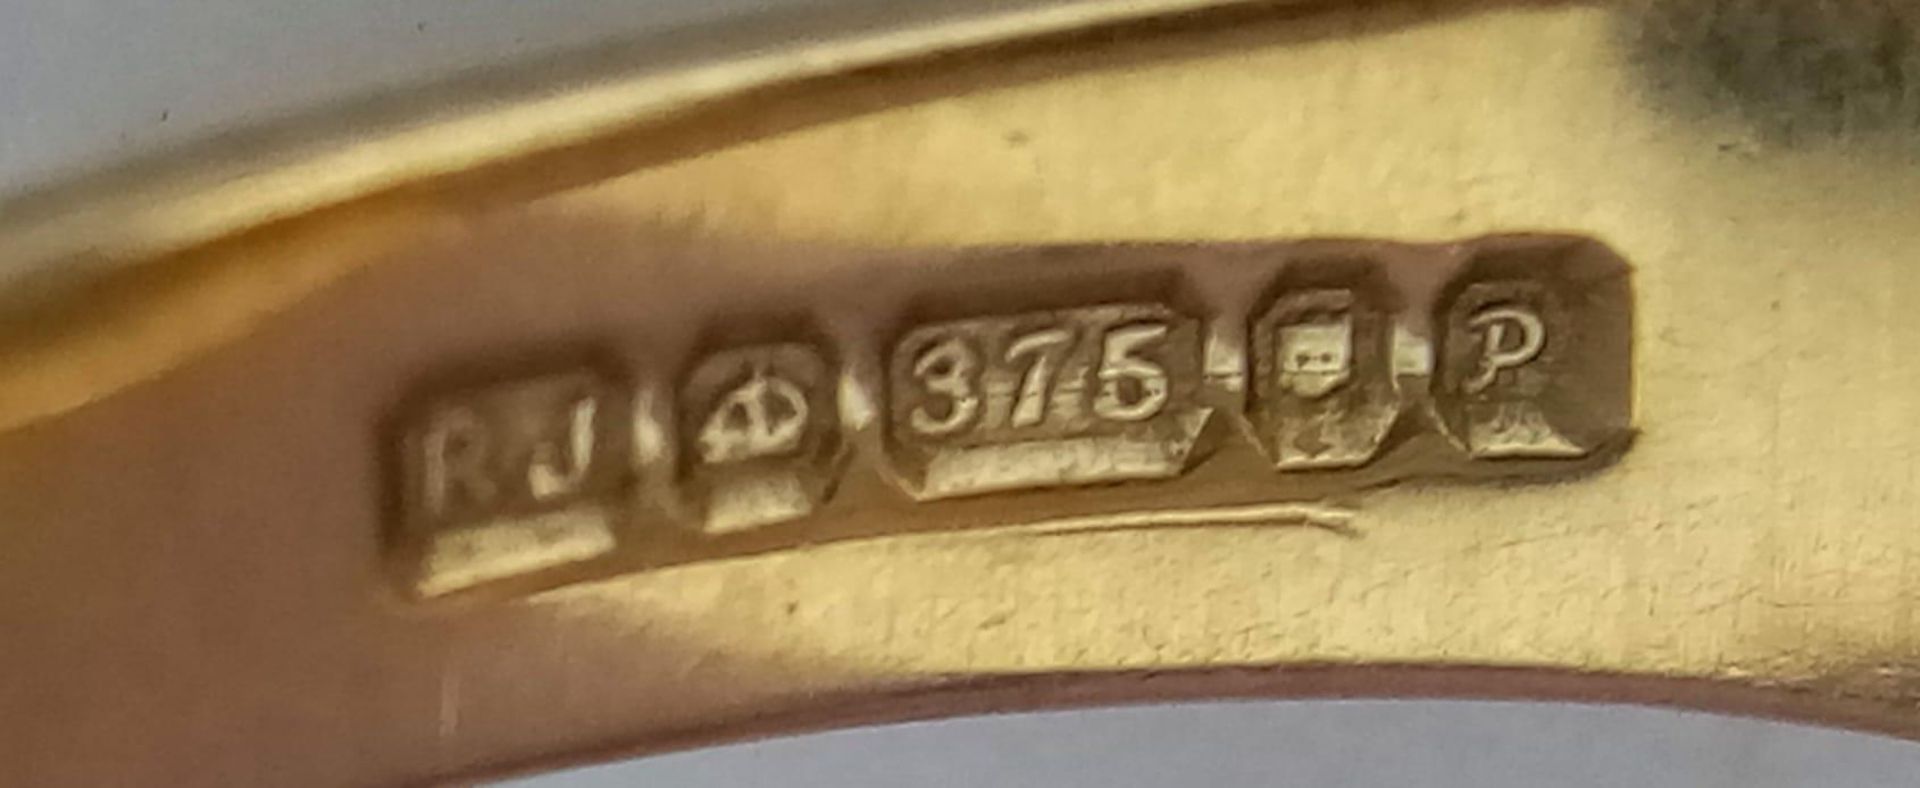 A Vintage 9K Yellow Gold Signet Ring. Size Q 1/2. Full UK hallmarks. 3.42g weight. - Bild 5 aus 5